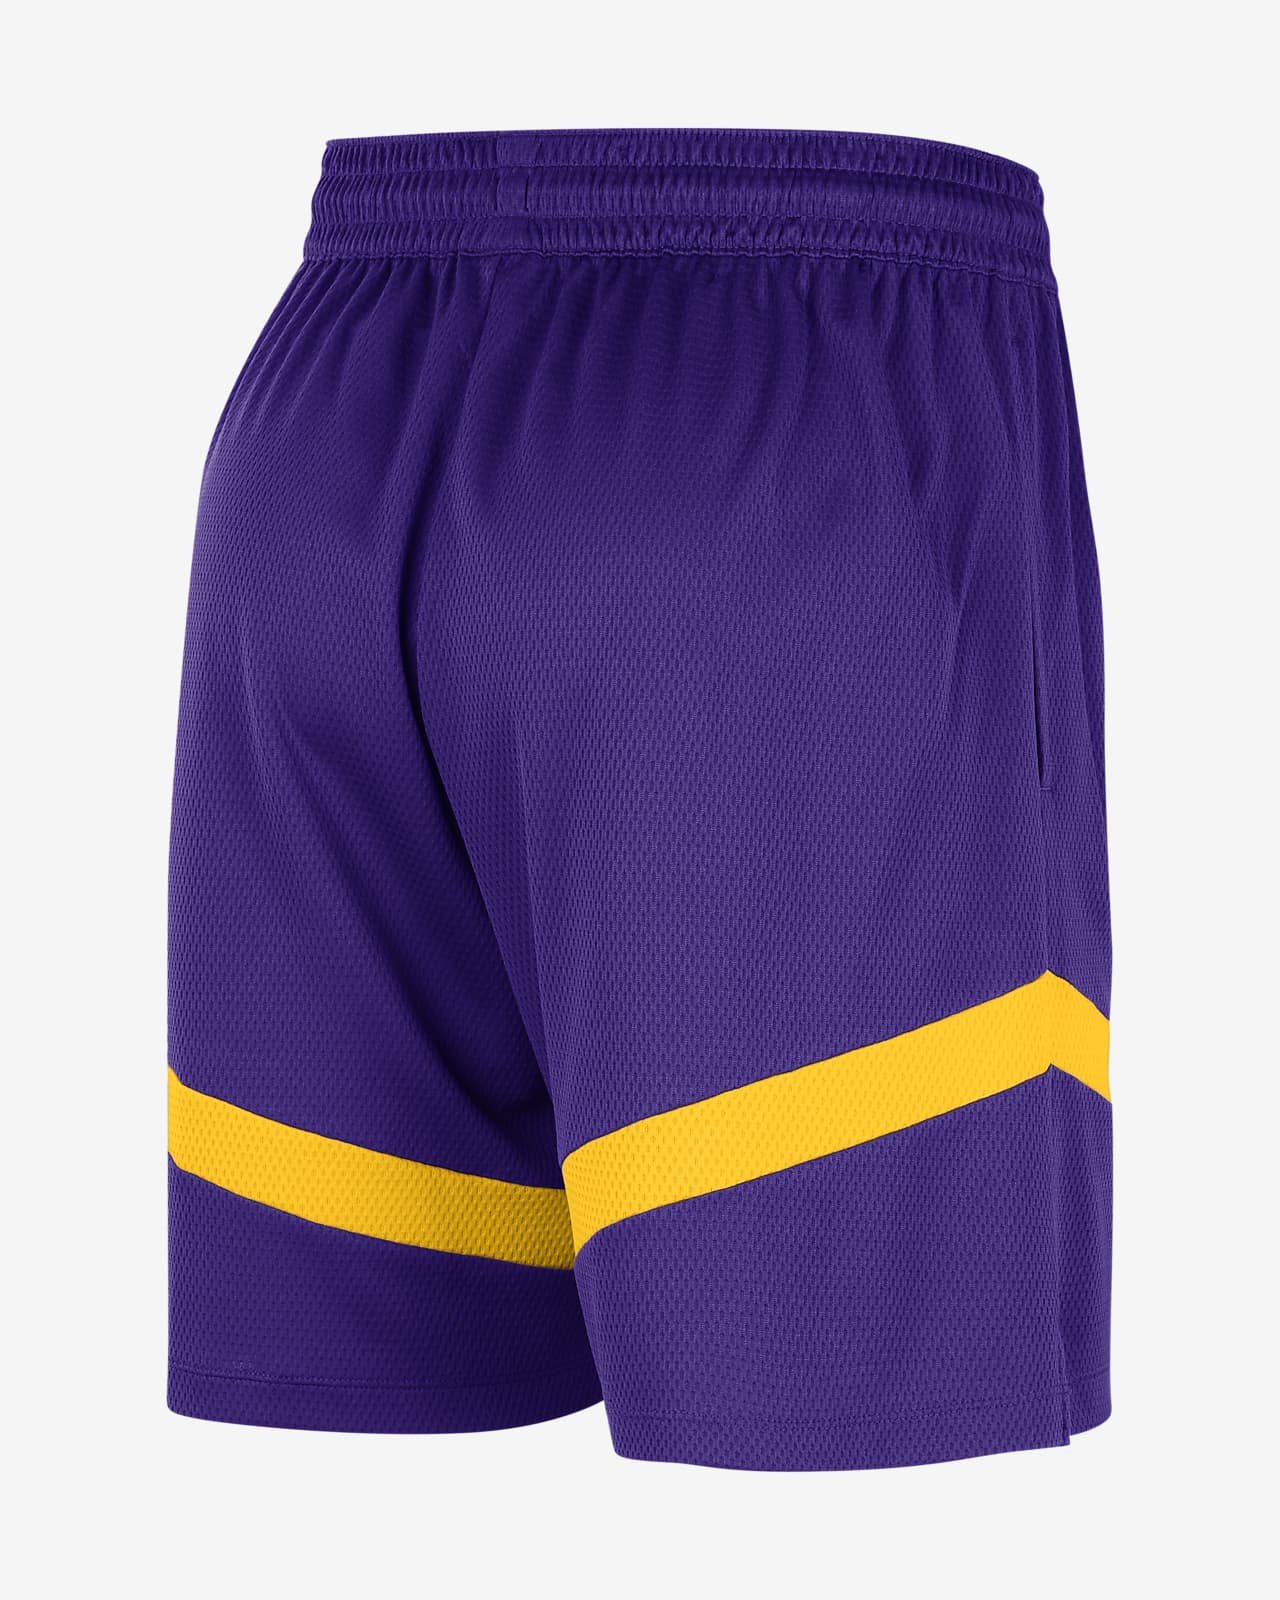 Los Angeles Lakers Shorts, Lakers Basketball Shorts, Gym Shorts